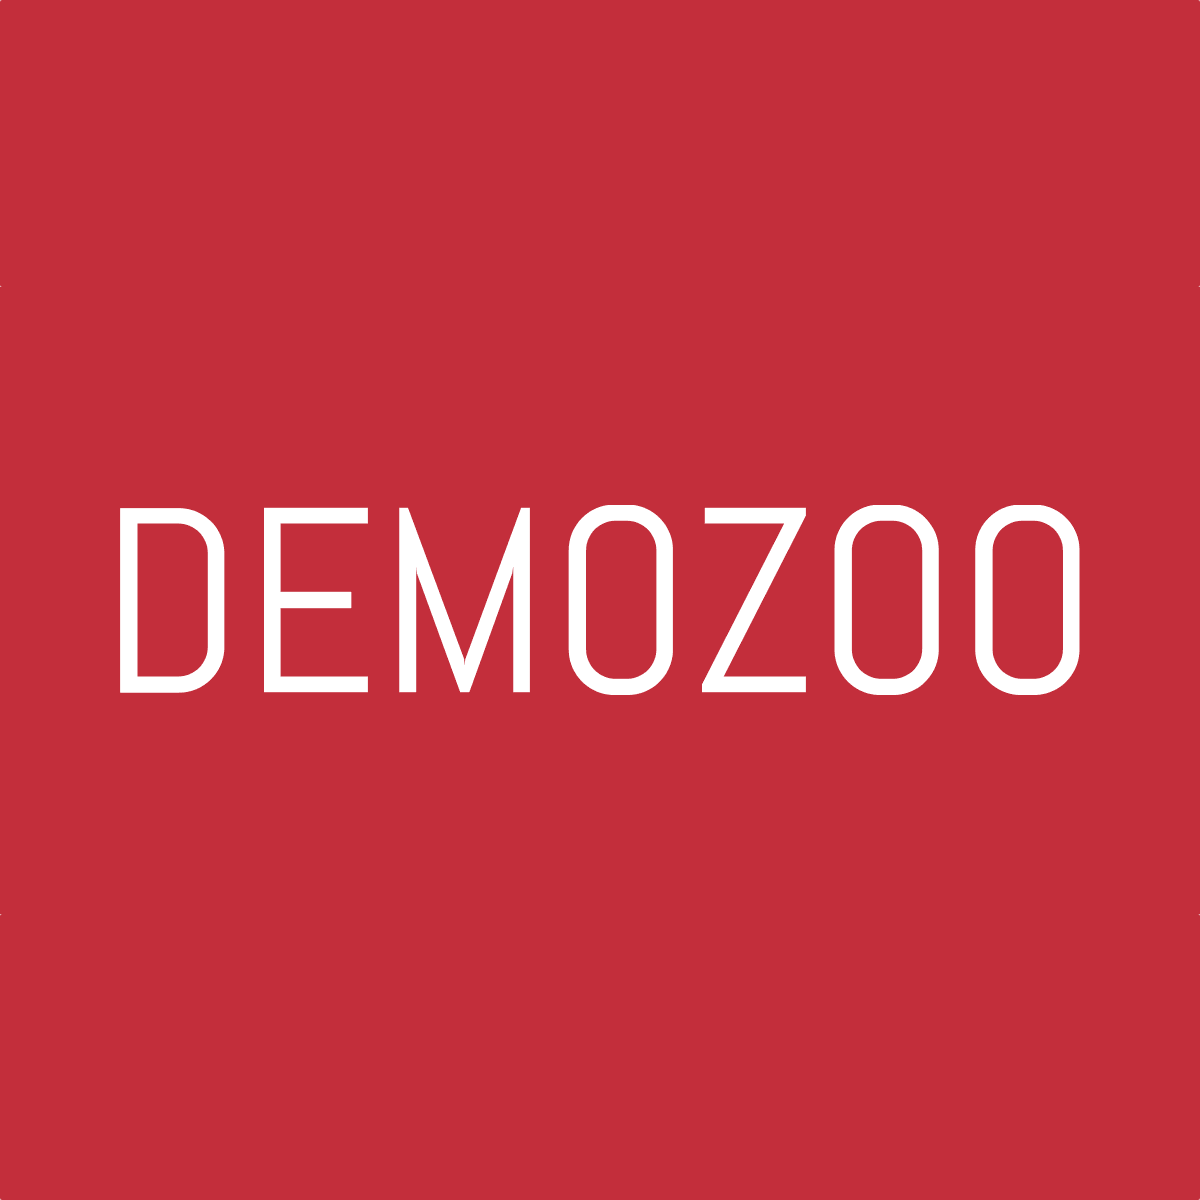 Demozoo